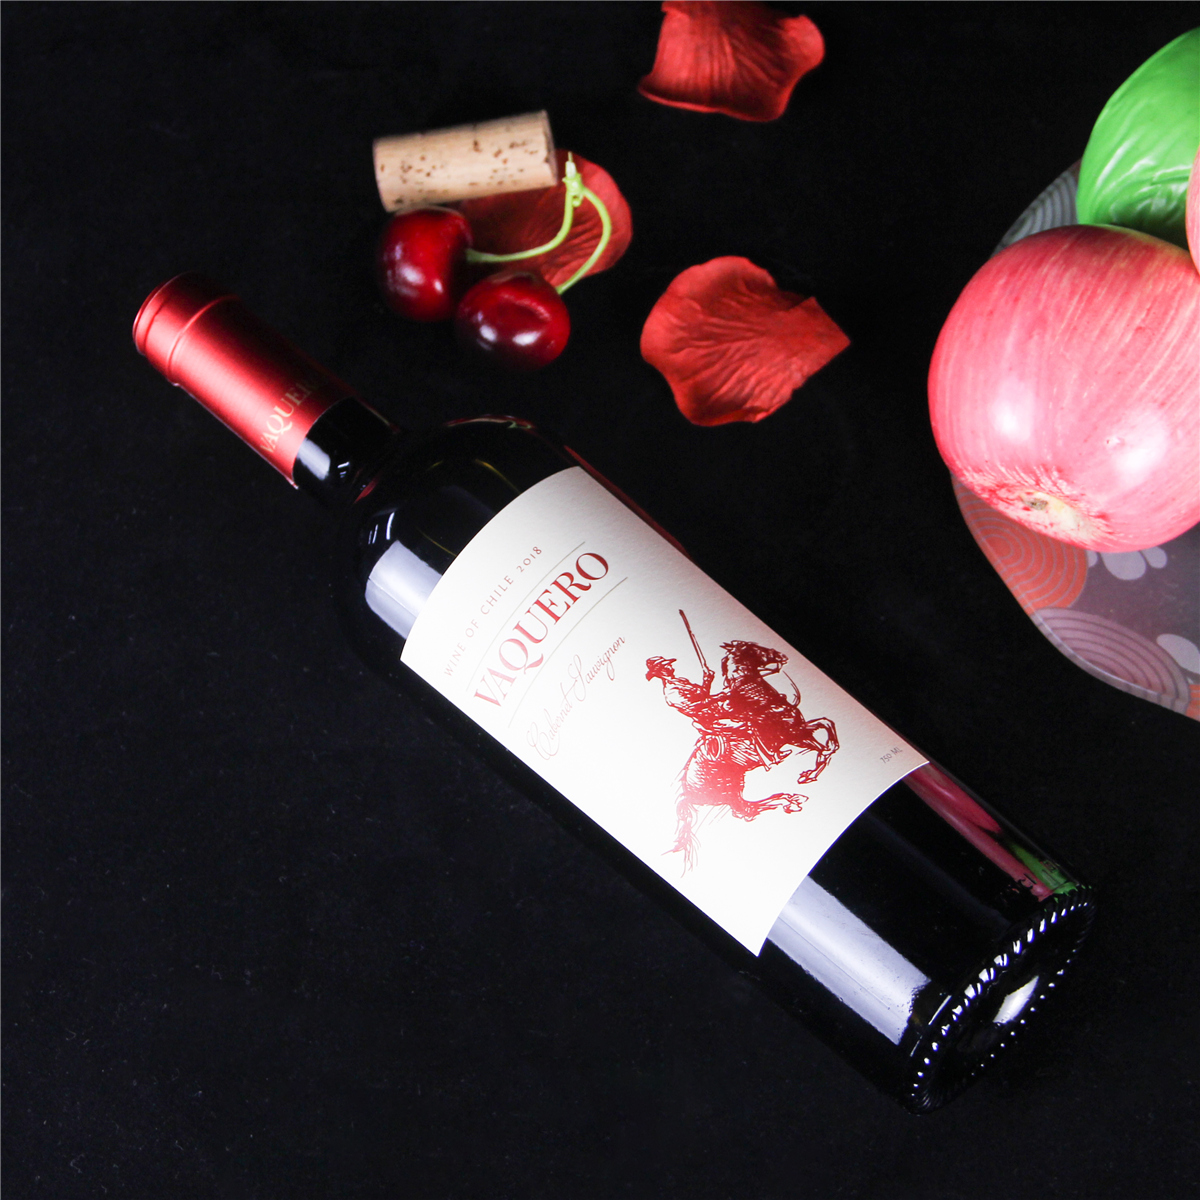 智利中央山谷骑士维卡罗精选赤霞珠干红葡萄酒红酒